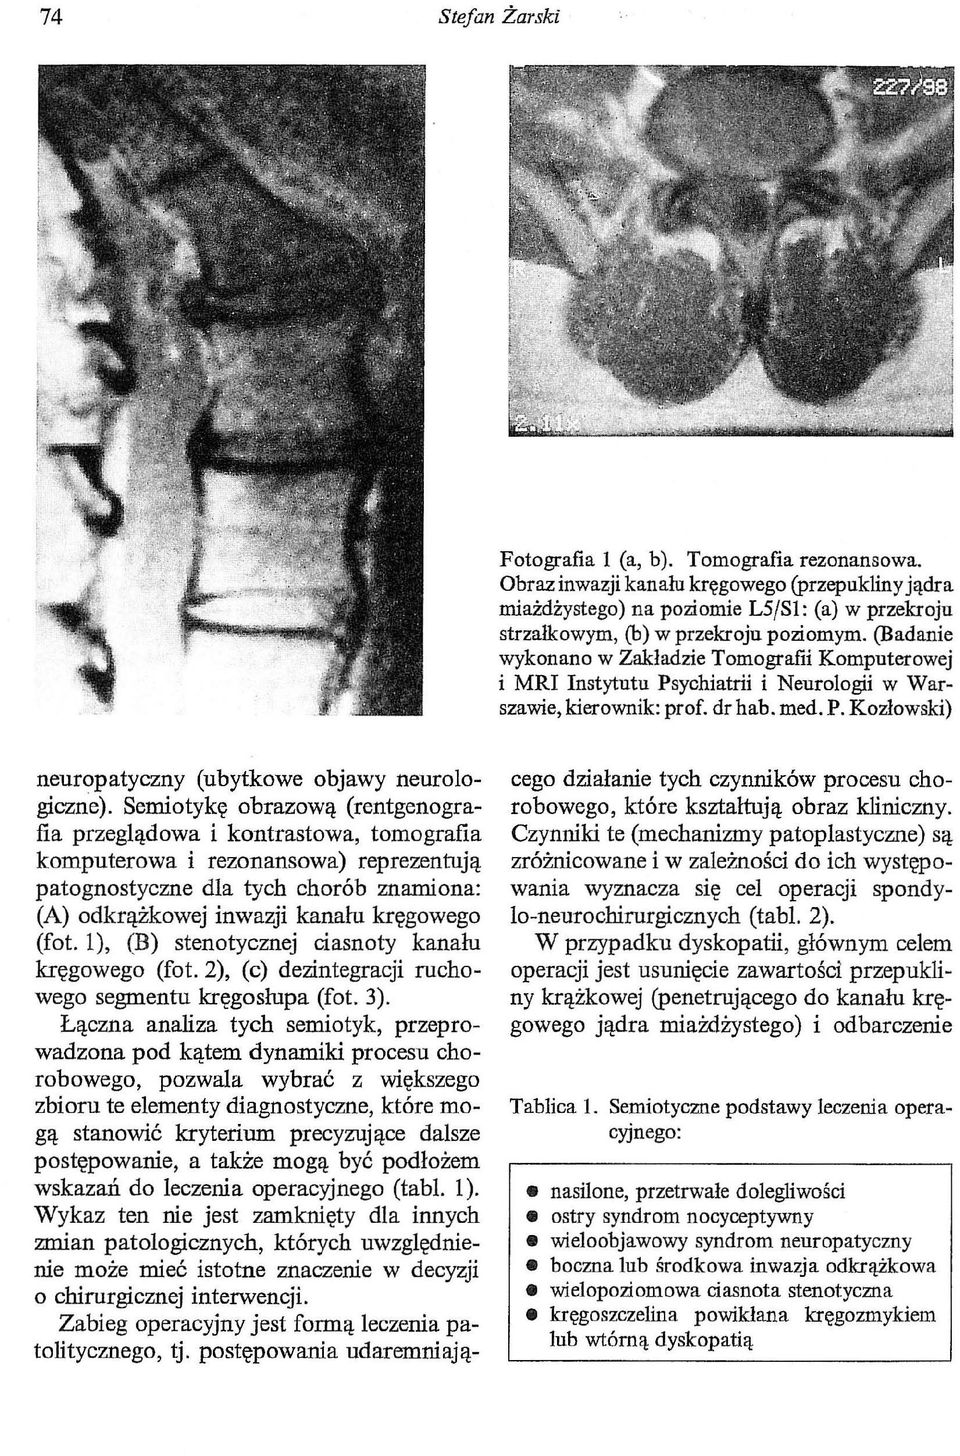 Semiotykę obrazową (rentgenografia przeglądowa i kontrastowa, tomografia komputerowa i rezonansowa) reprezentują patognostyczne dla tych chorób znamiona: (A) odkrążkowej inwazji kanału kręgowego (fot.